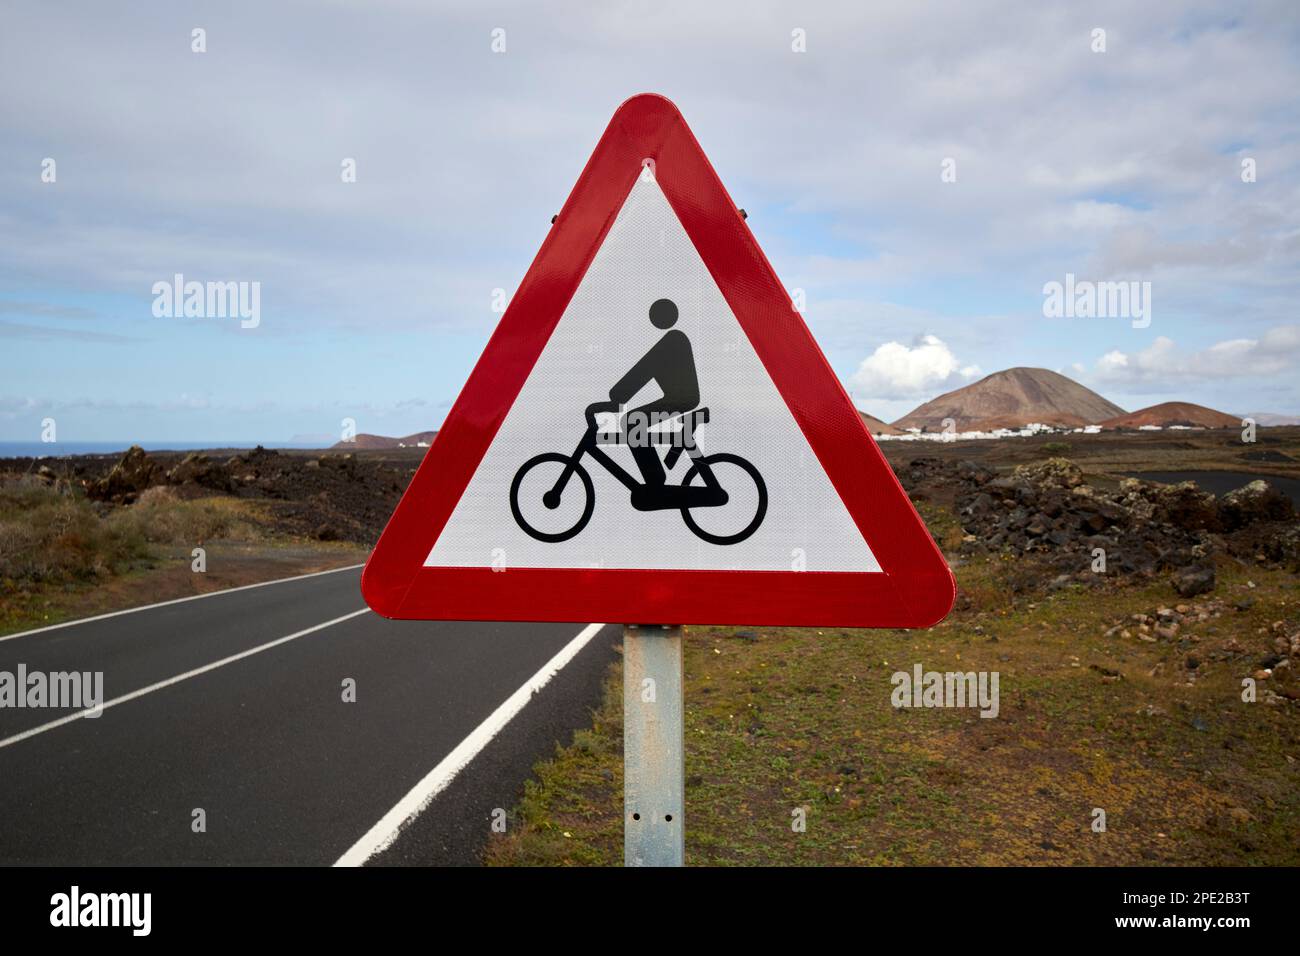 Avertissement pour les cyclistes sur une route à vélo dans la campagne de Lanzarote, îles Canaries, Espagne Banque D'Images